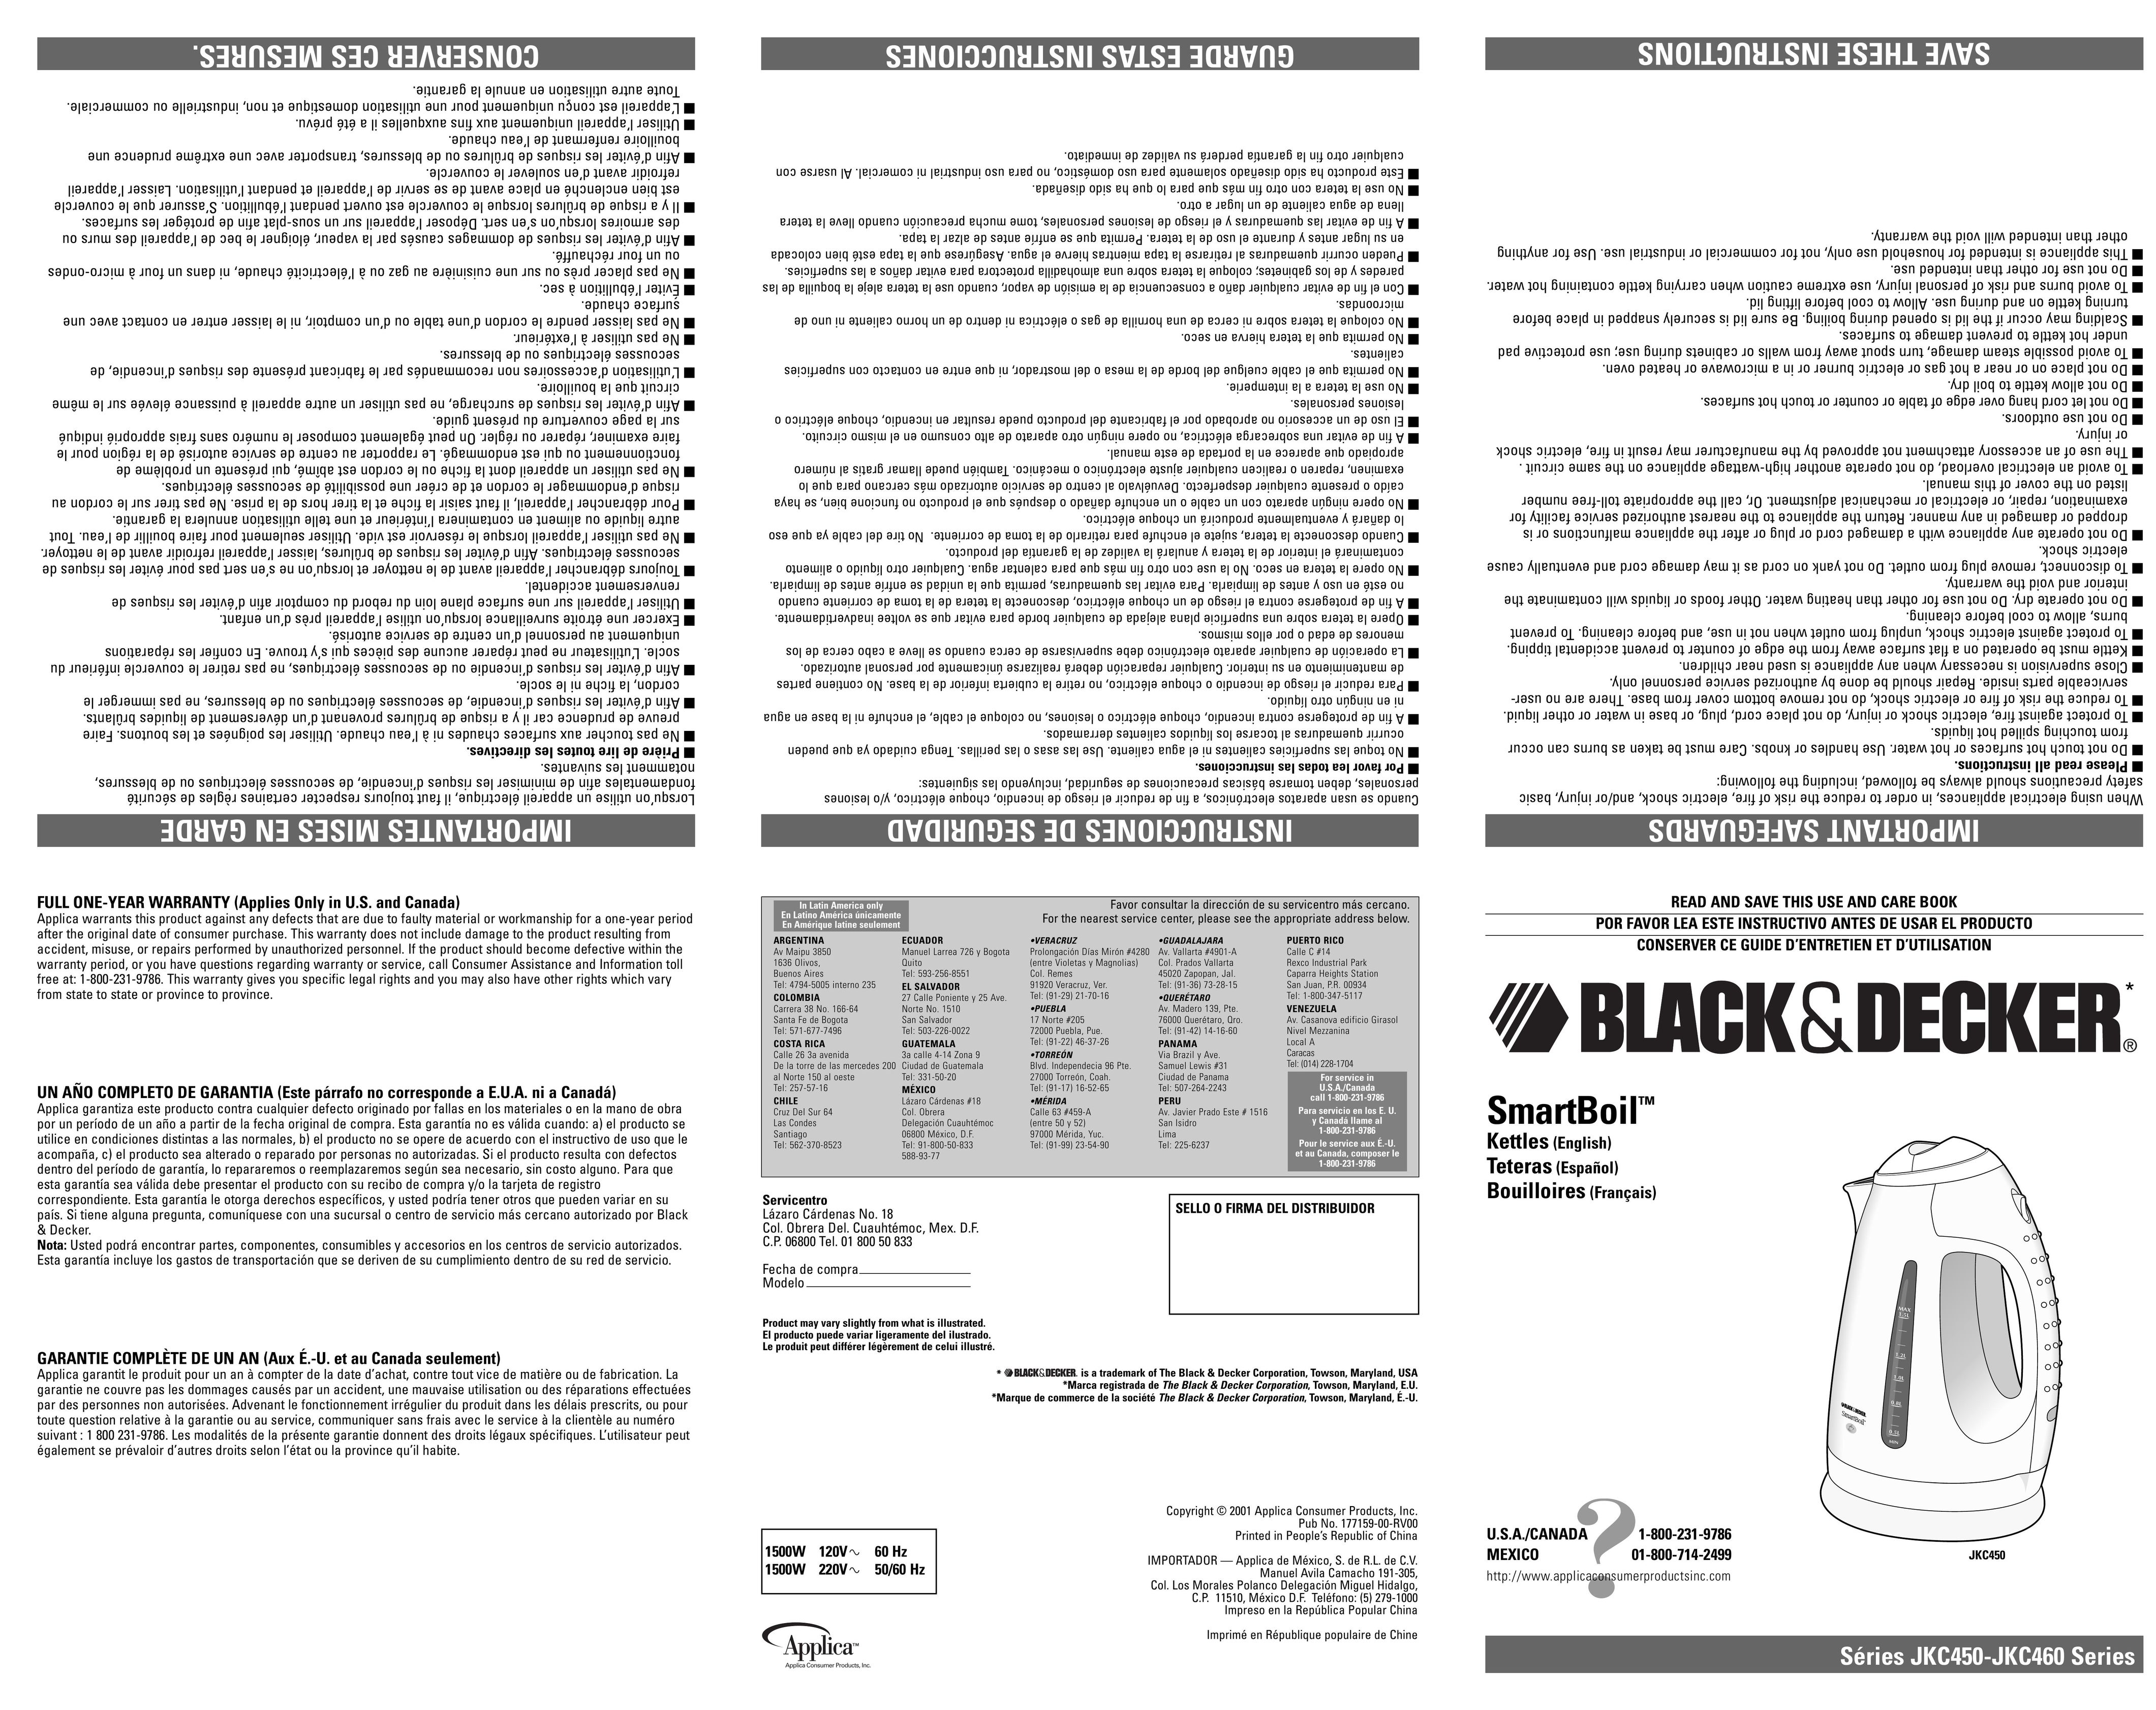 Black & Decker JKC460 Hot Beverage Maker User Manual